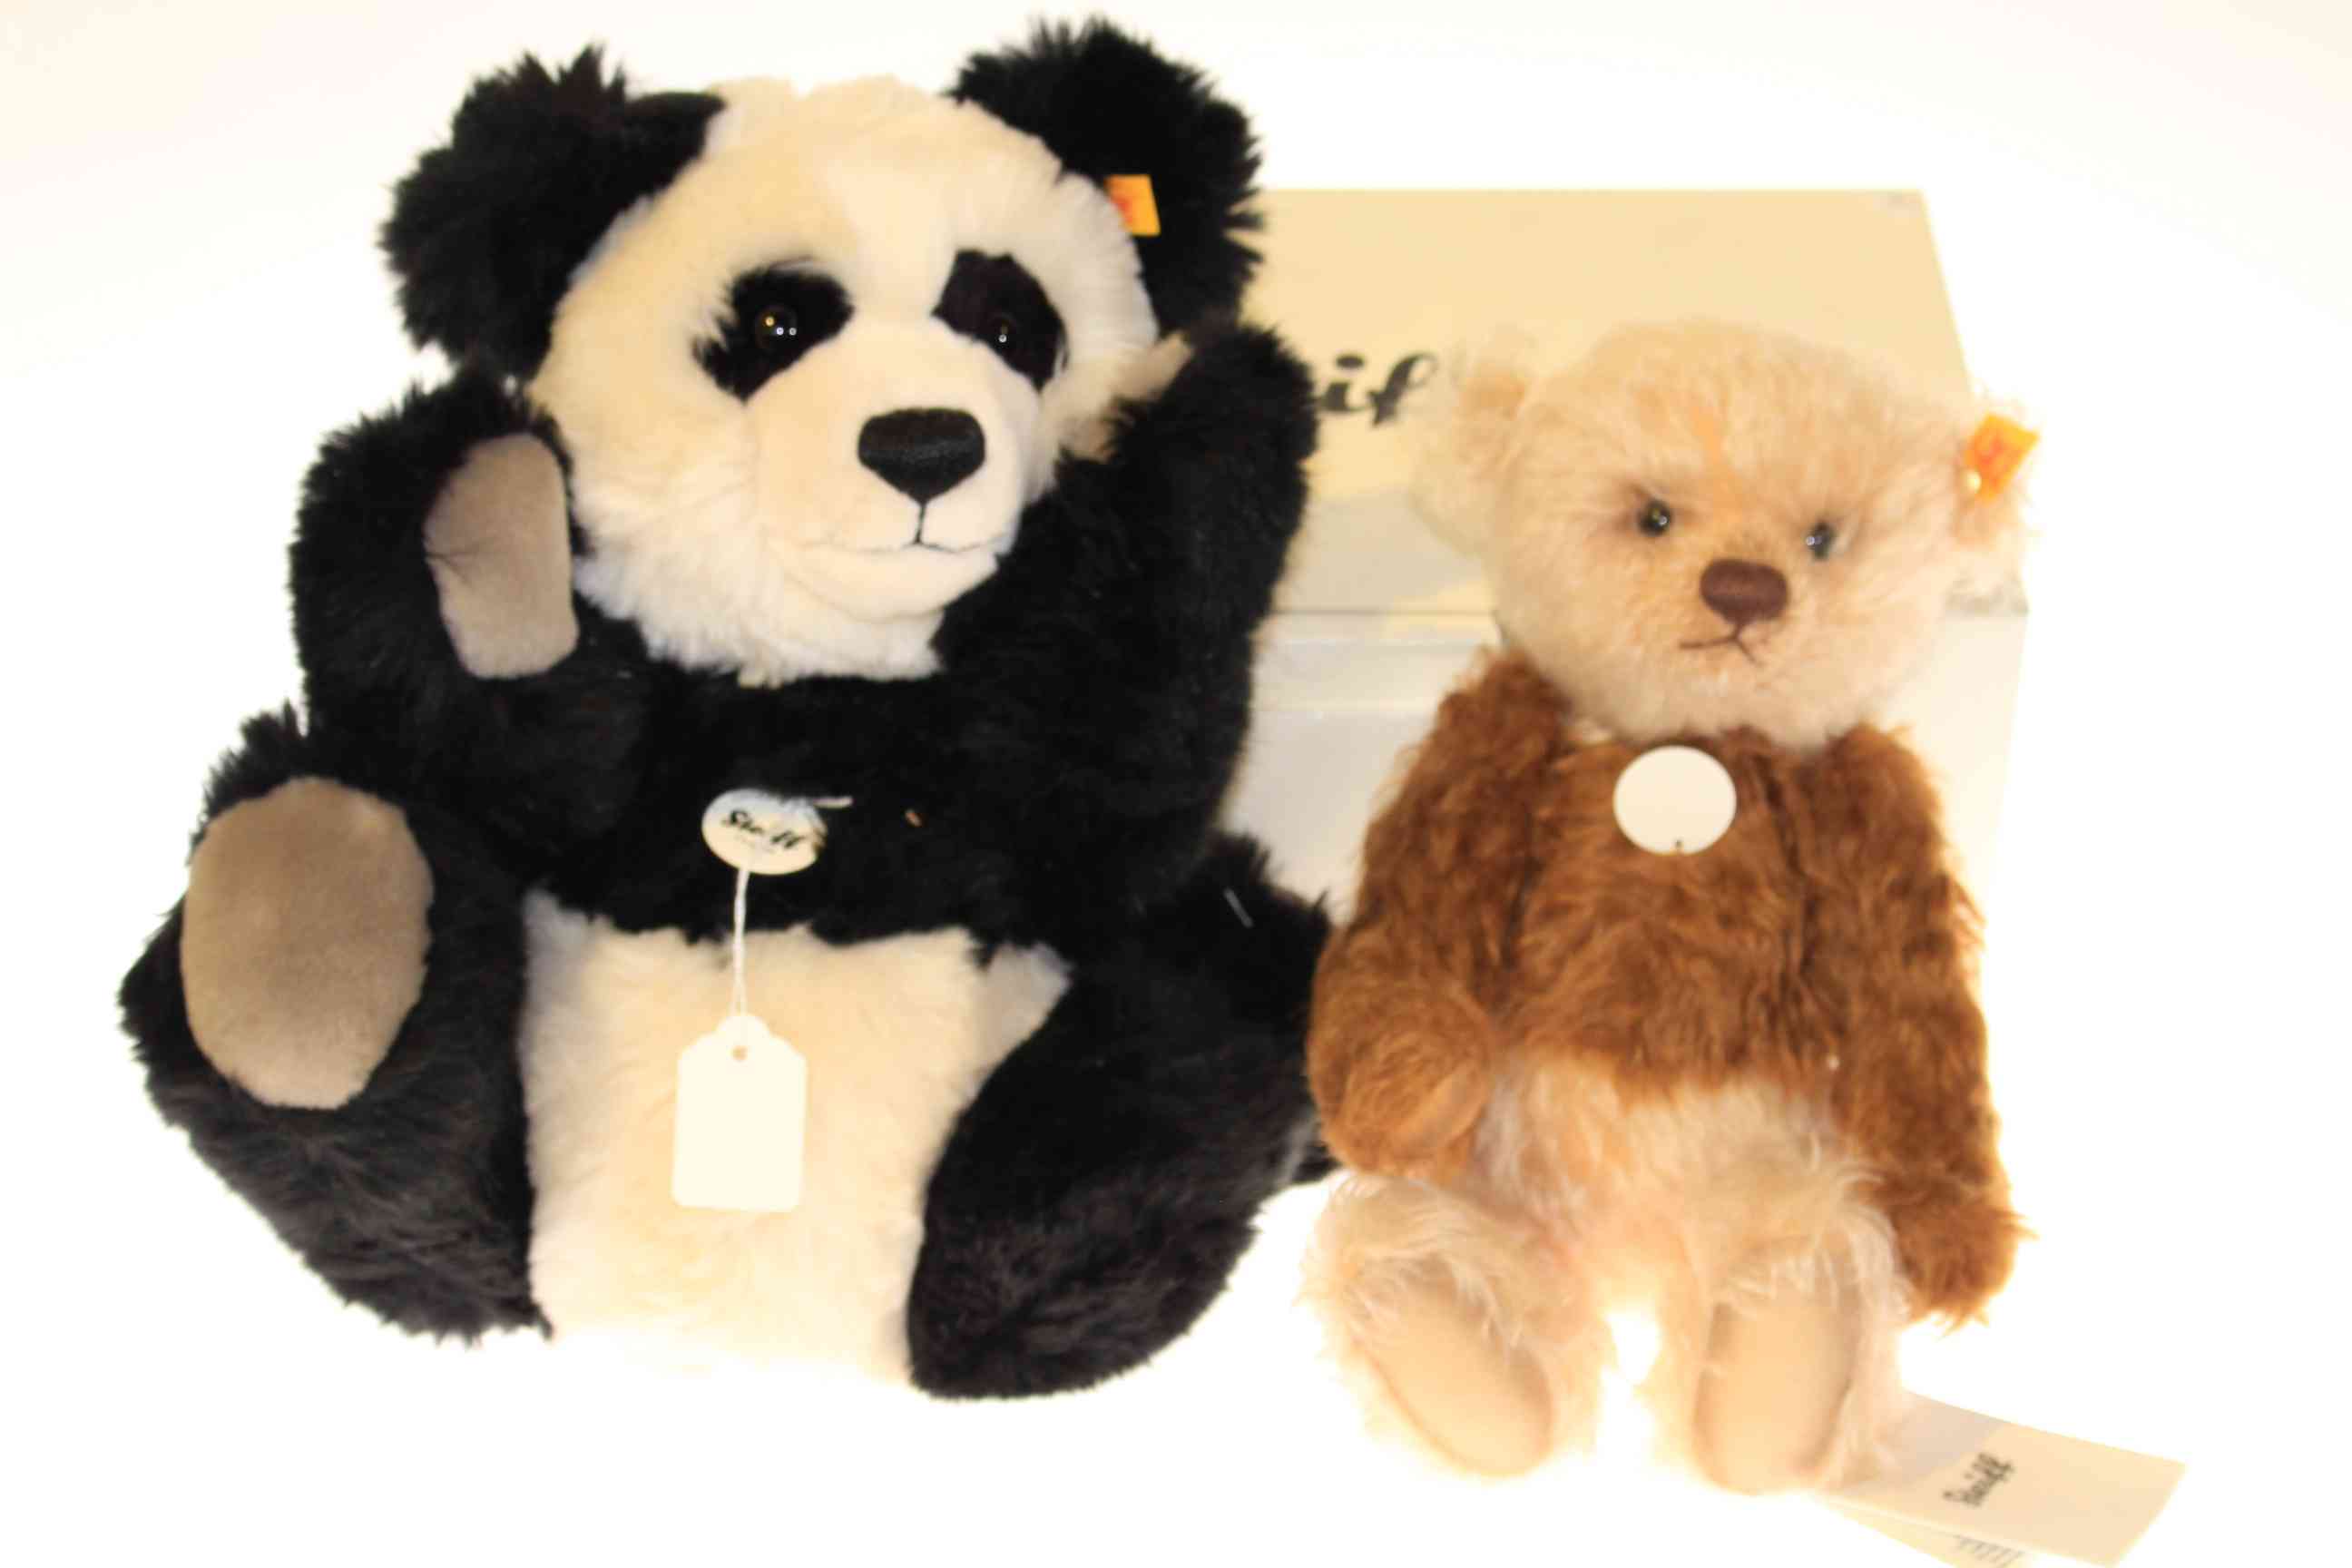 Boxed Steiff teddy and Steiff Panda bear